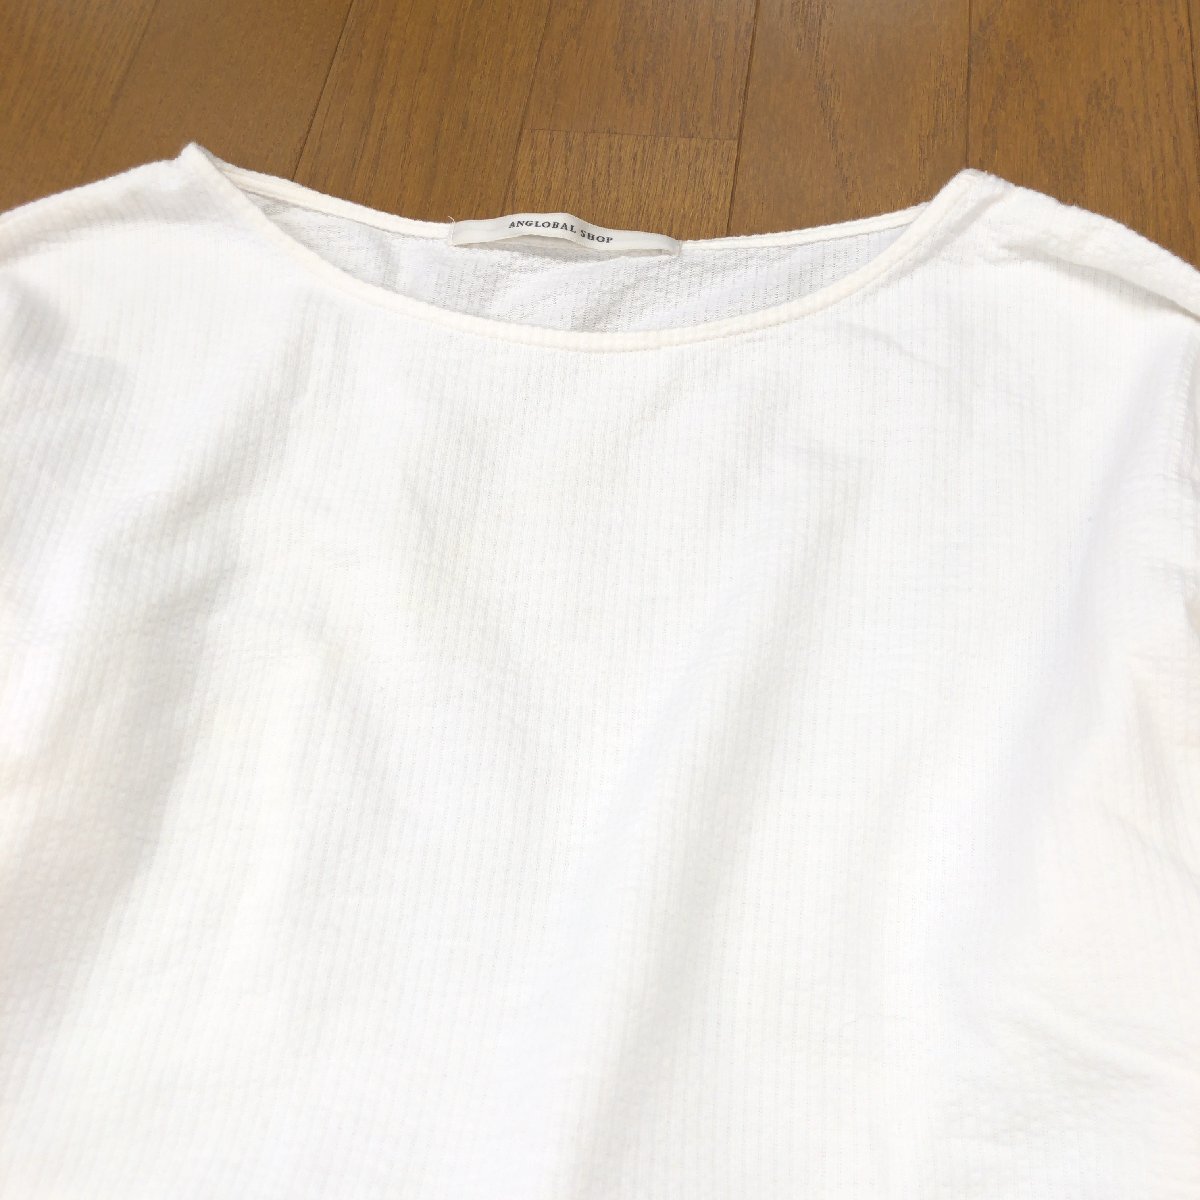 美品 ANGLOBAL SHOP アングローバルショップ オープンネック リボンデザイン カットソー M 白 ホワイト 日本製 ロンT Tシャツ 七分袖_画像4